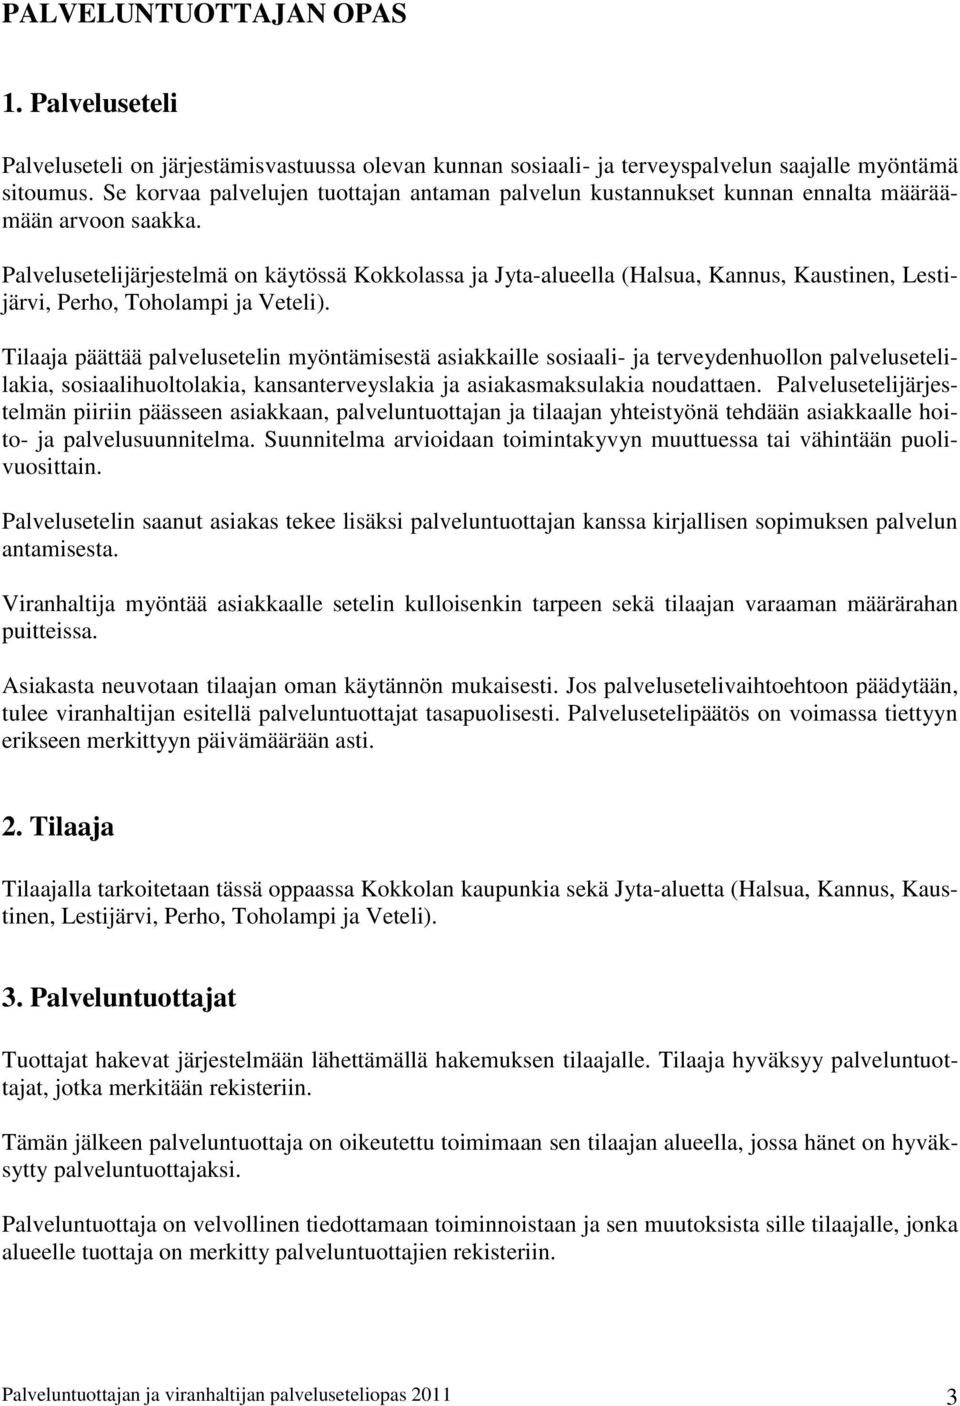 Palvelusetelijärjestelmä on käytössä Kokkolassa ja Jyta-alueella (Halsua, Kannus, Kaustinen, Lestijärvi, Perho, Toholampi ja Veteli).